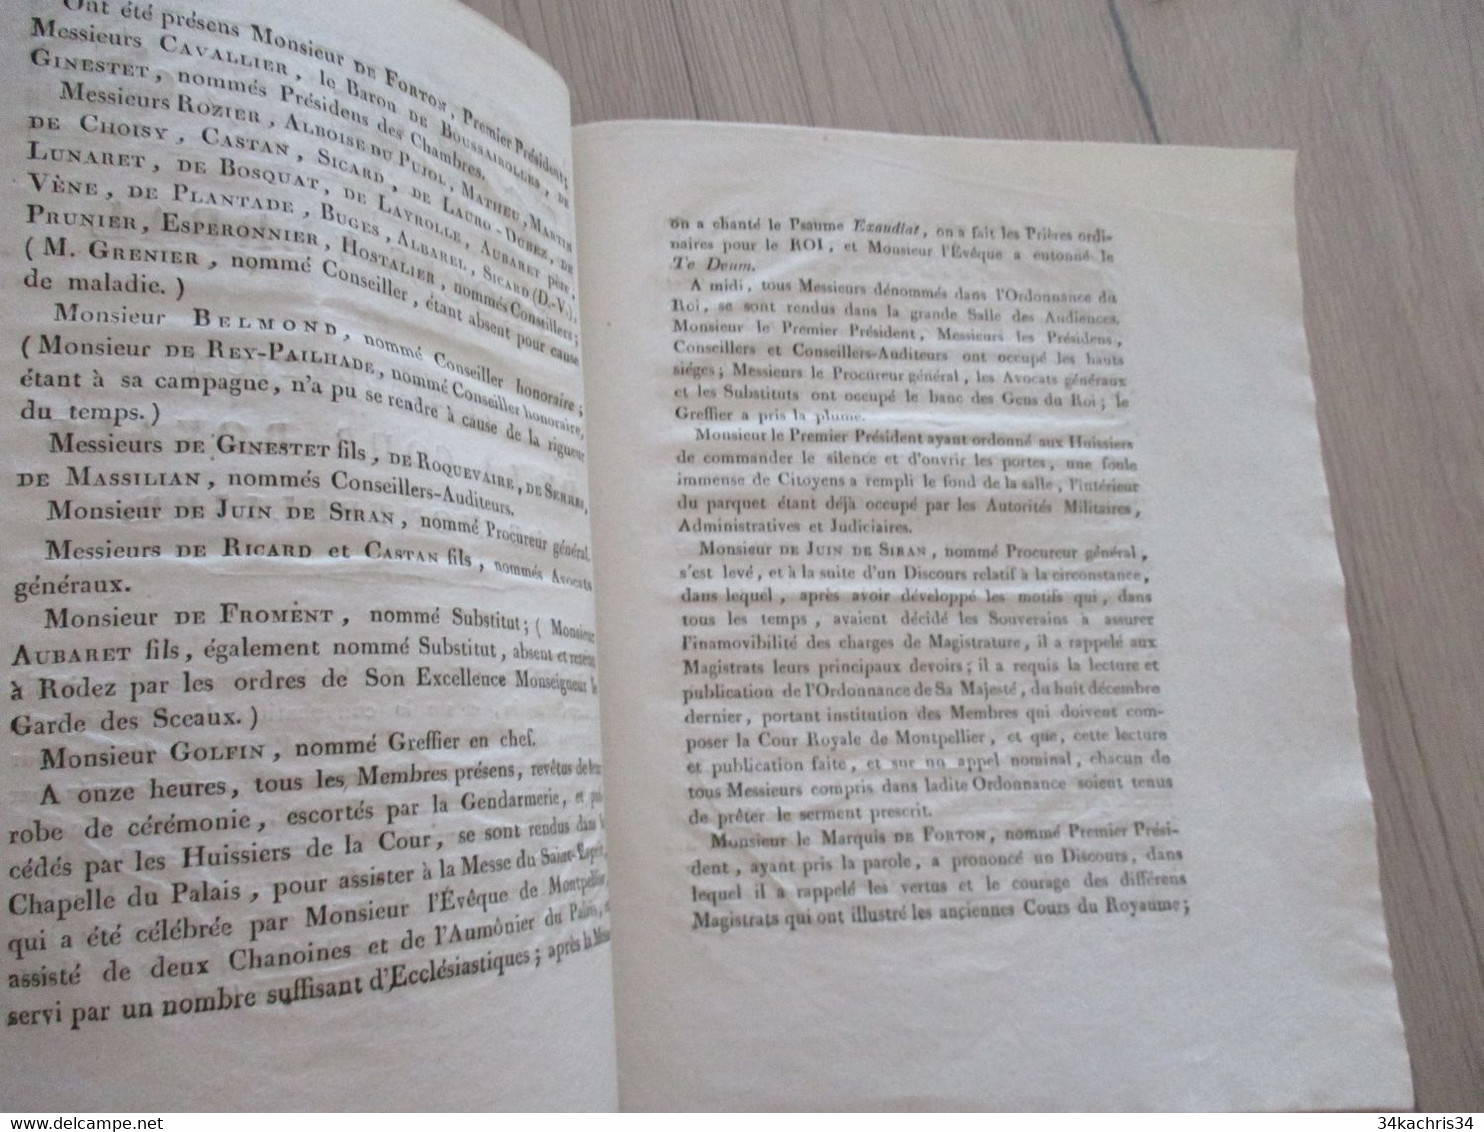 1819 Procès Verbal De L'installation De La Cour Royale De Montpellier 5p De Textes - Decrees & Laws